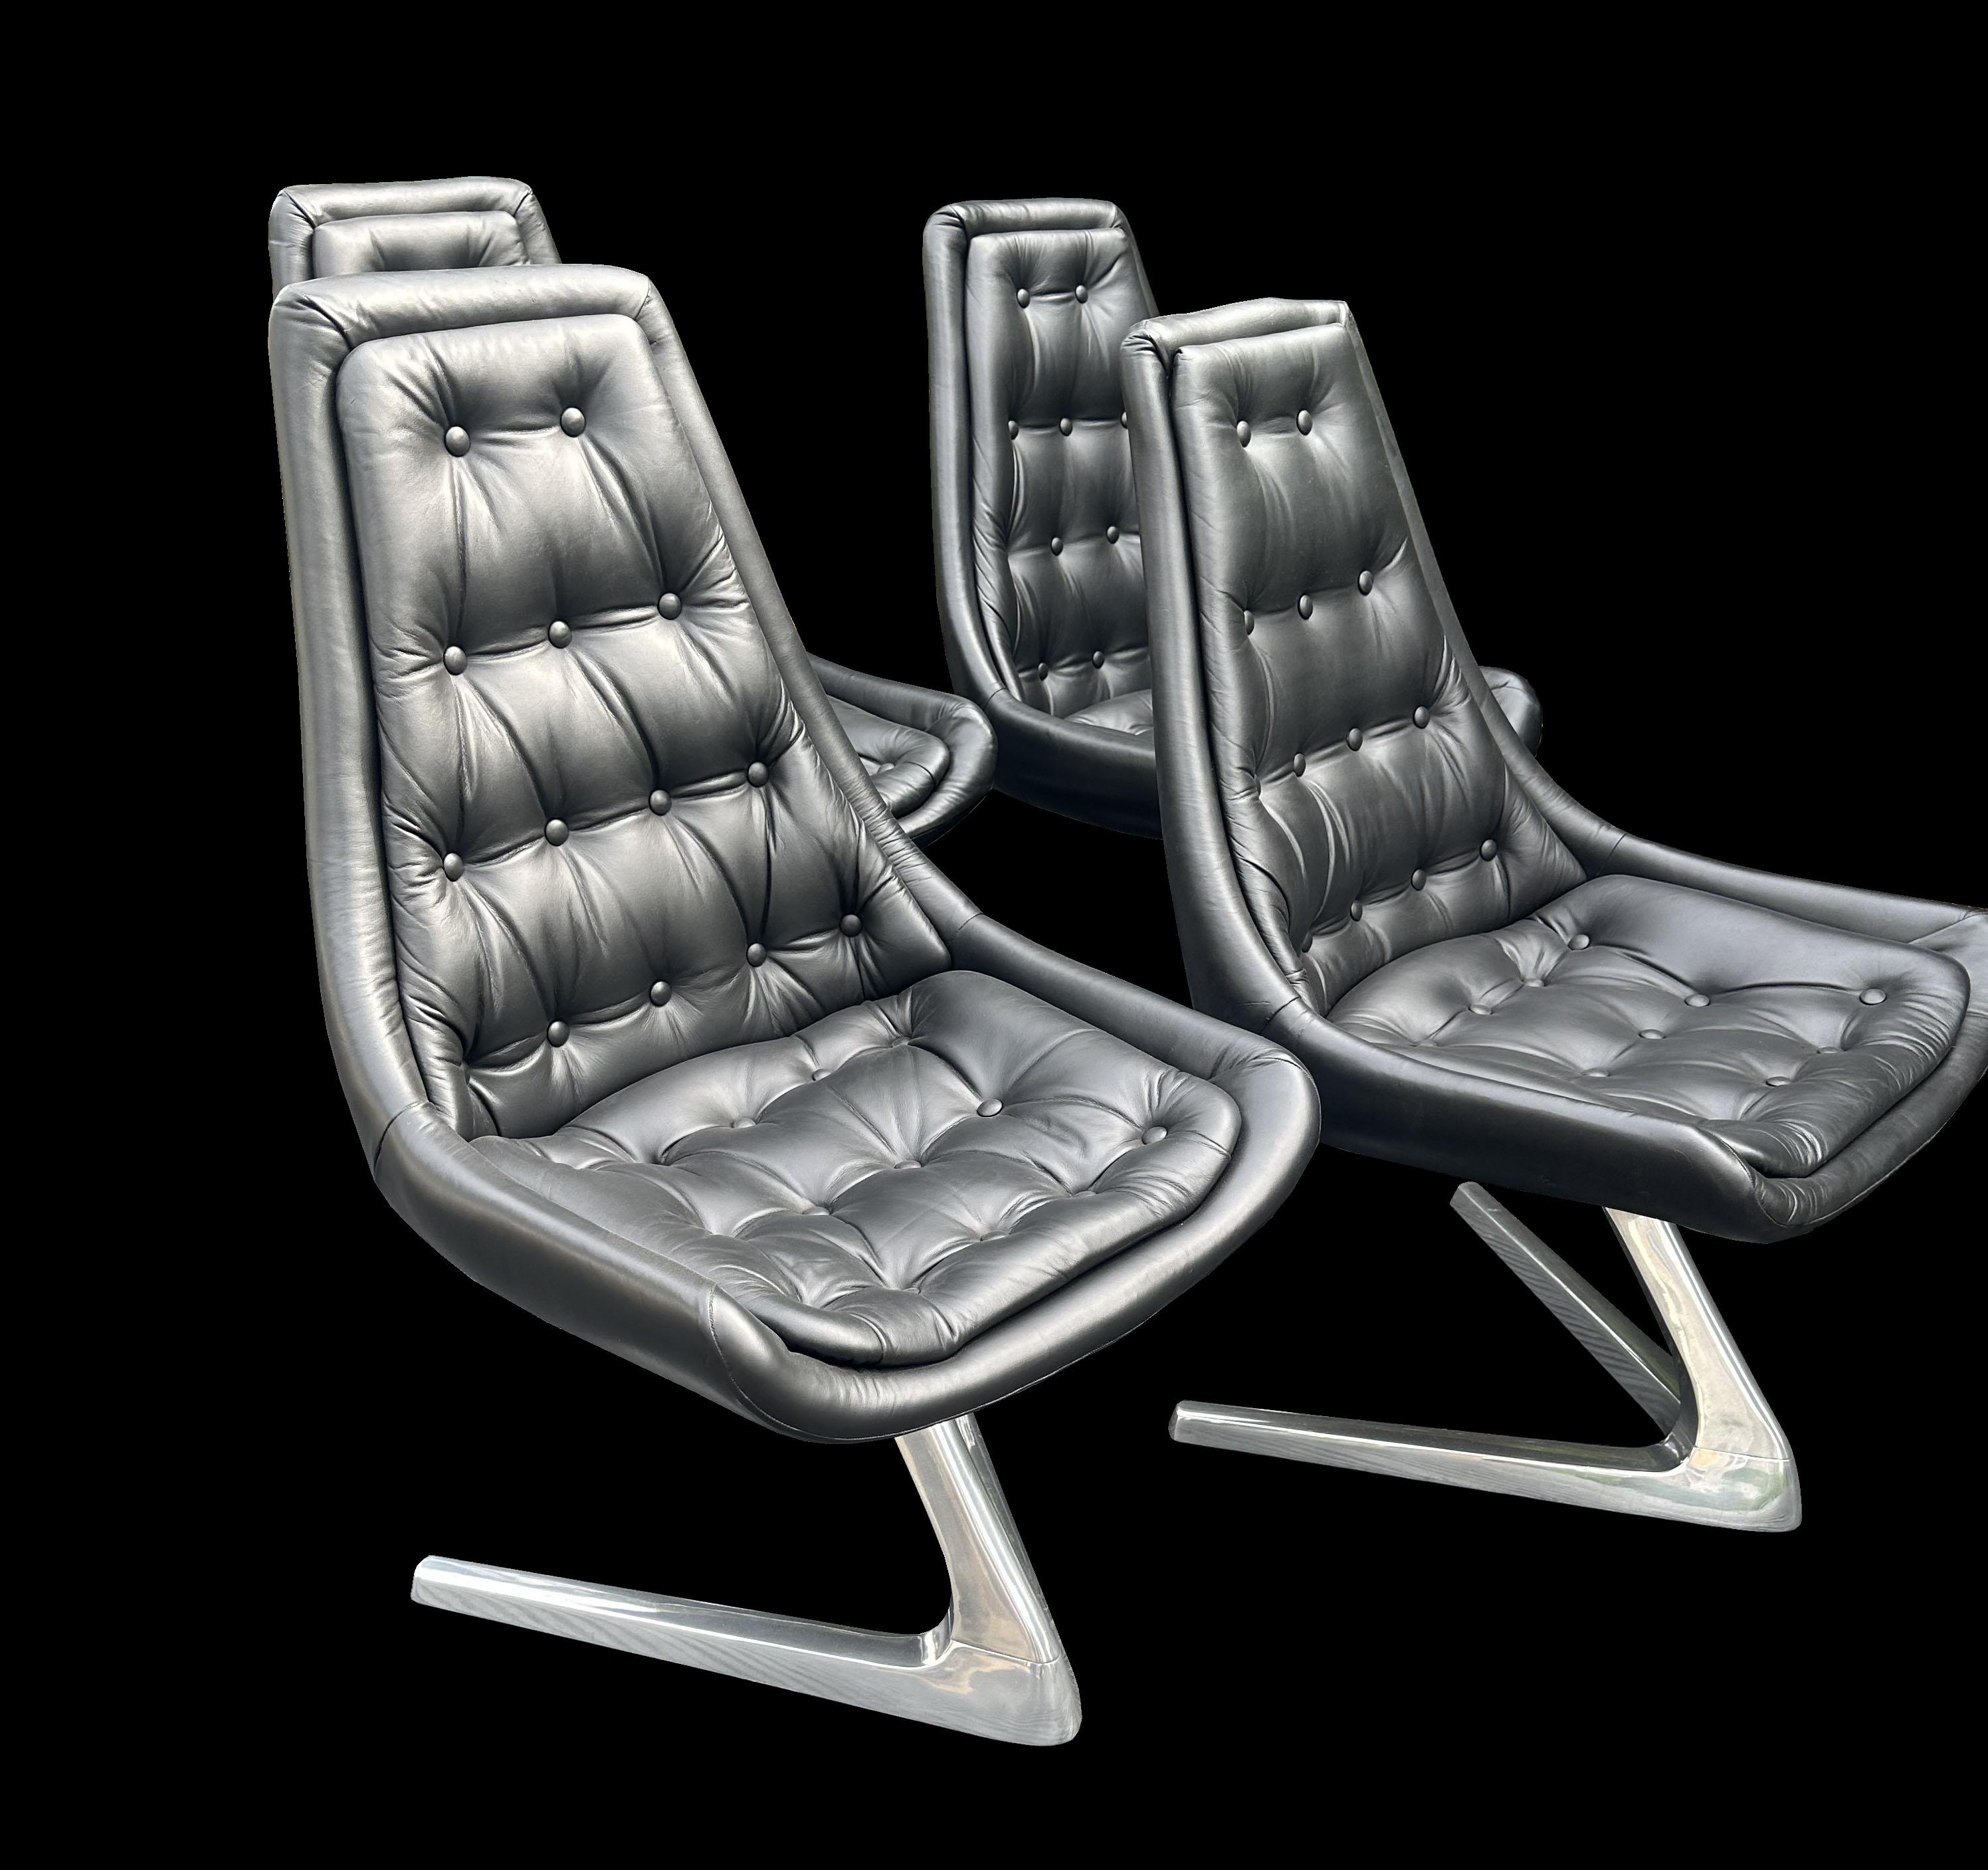 Ensemble original de 4 chaises pivotantes auto-centrantes Chromcraft Sculpta en cuir noir et aluminium poli, vues dans la série originale de Star-Trek dans l'épisode 'The trouble with Tribbles' (une image fixe est montrée dans les images des